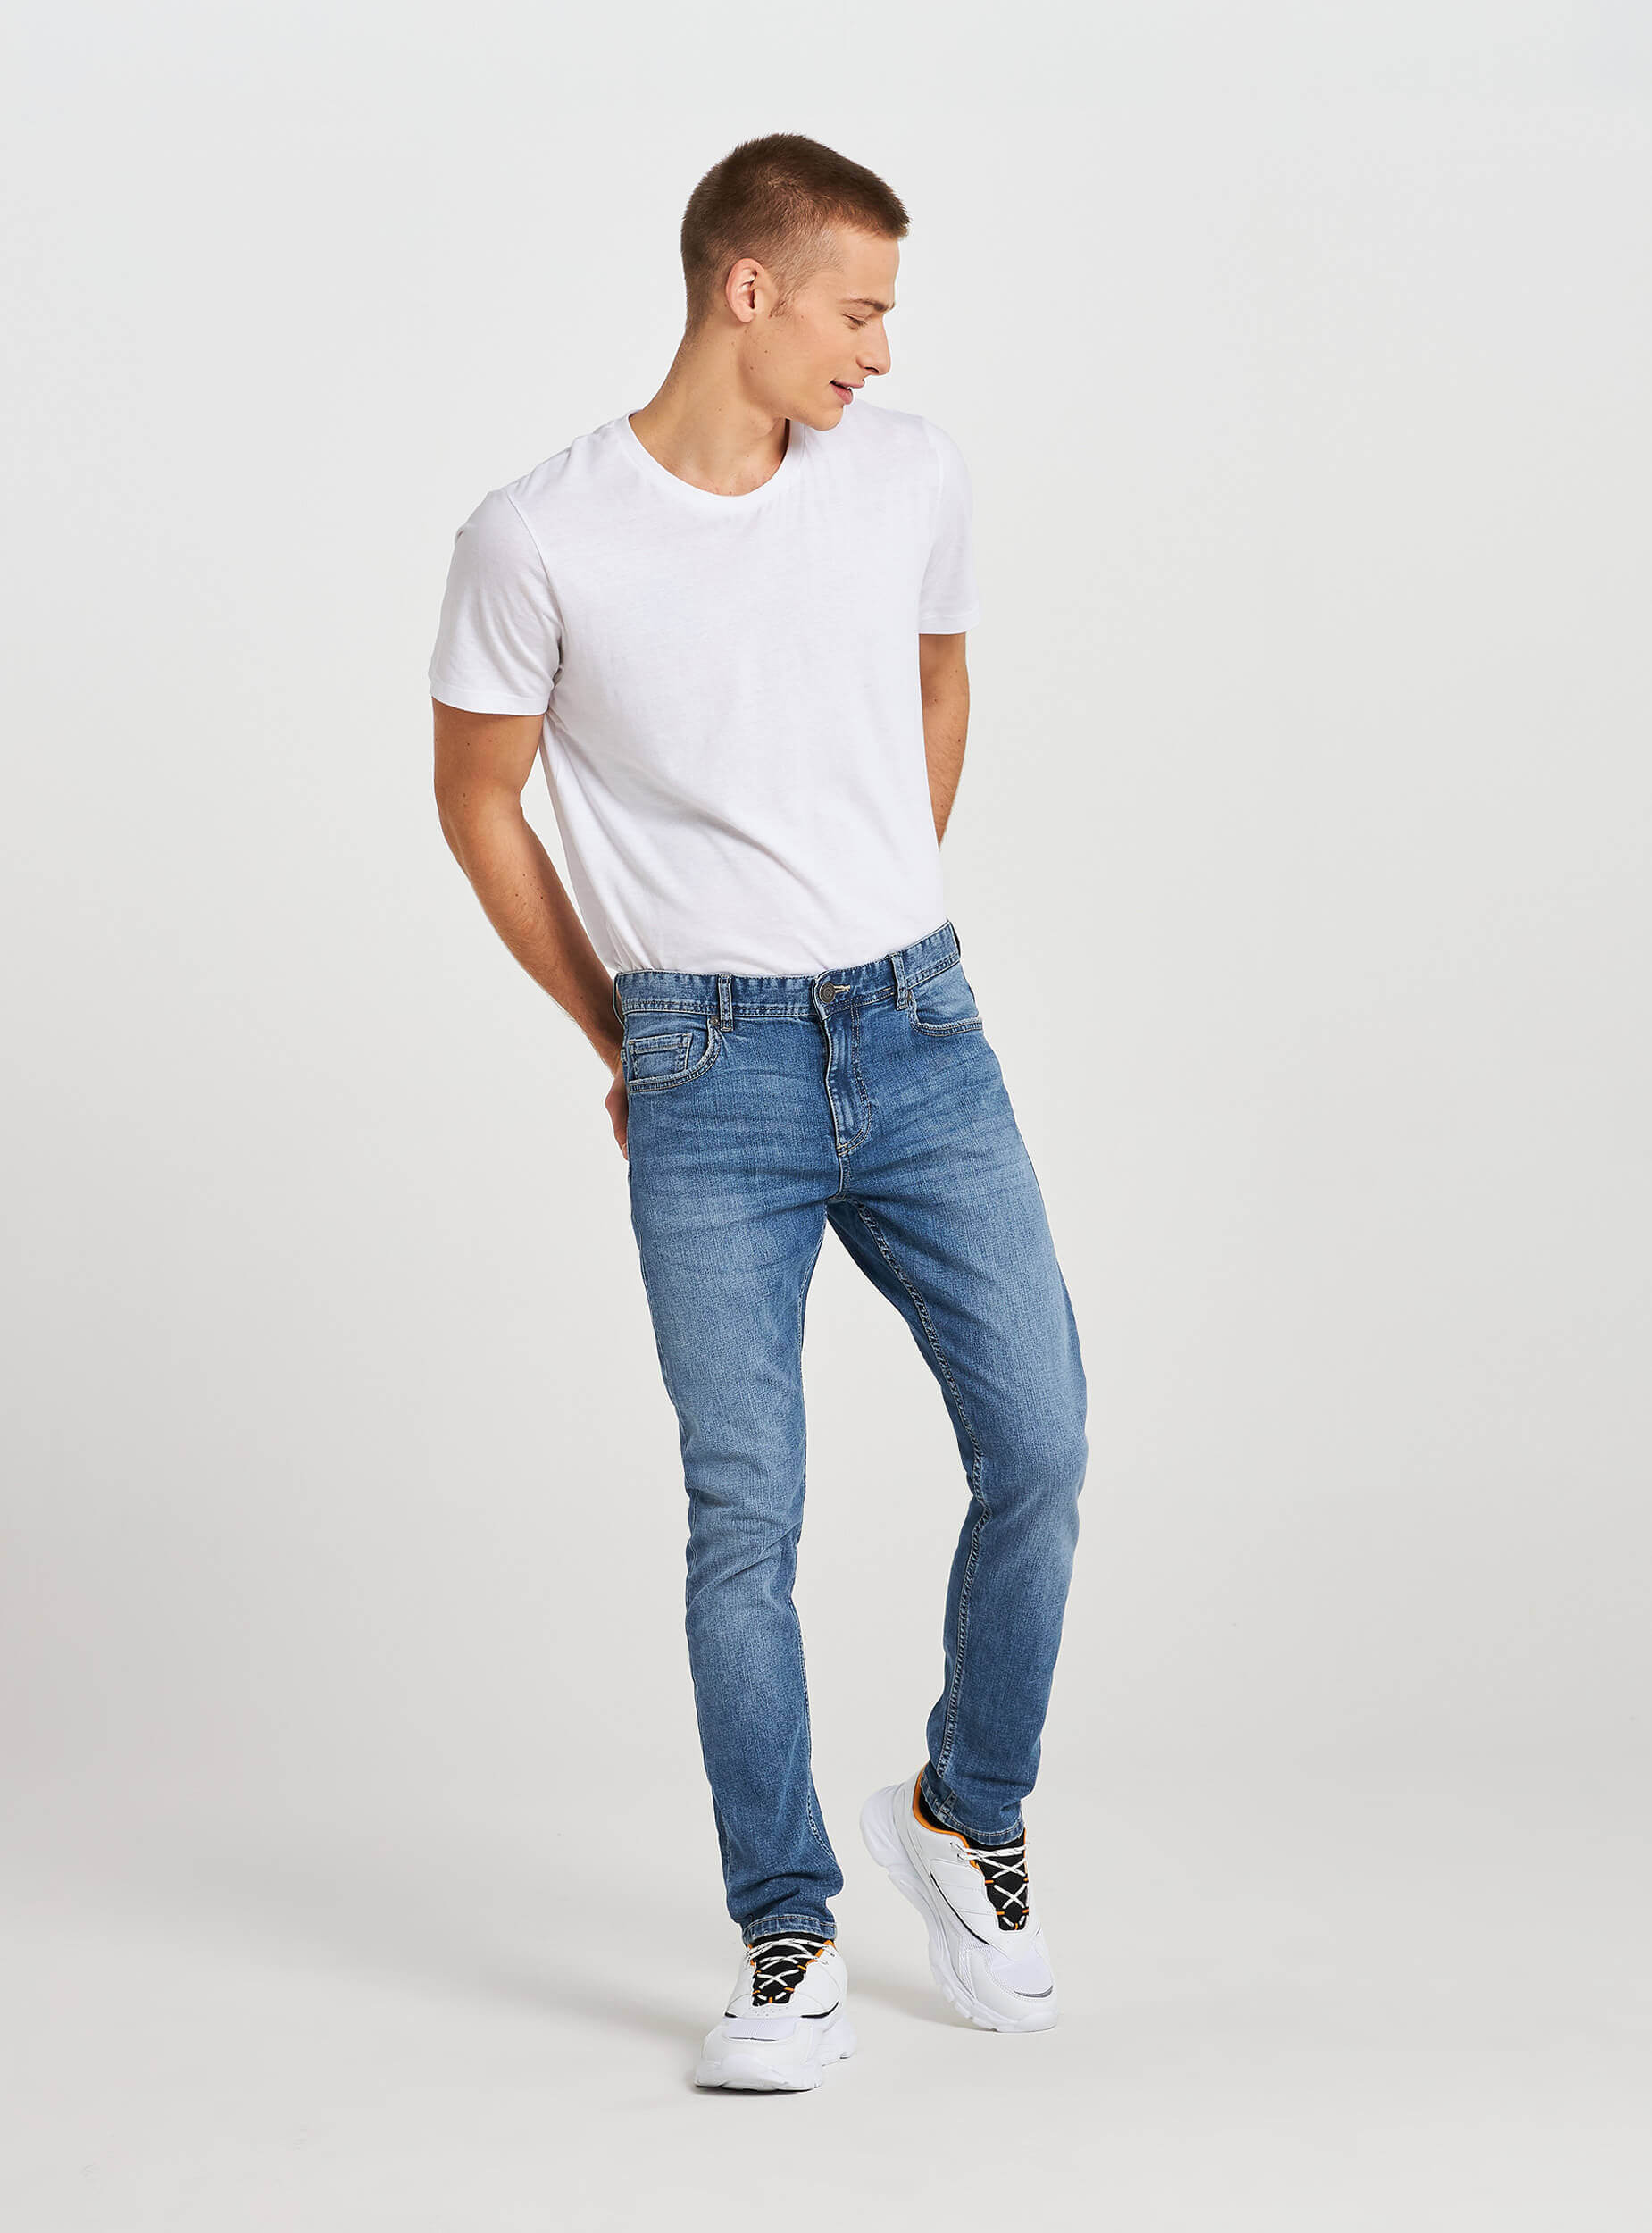 buy skinny jeans online